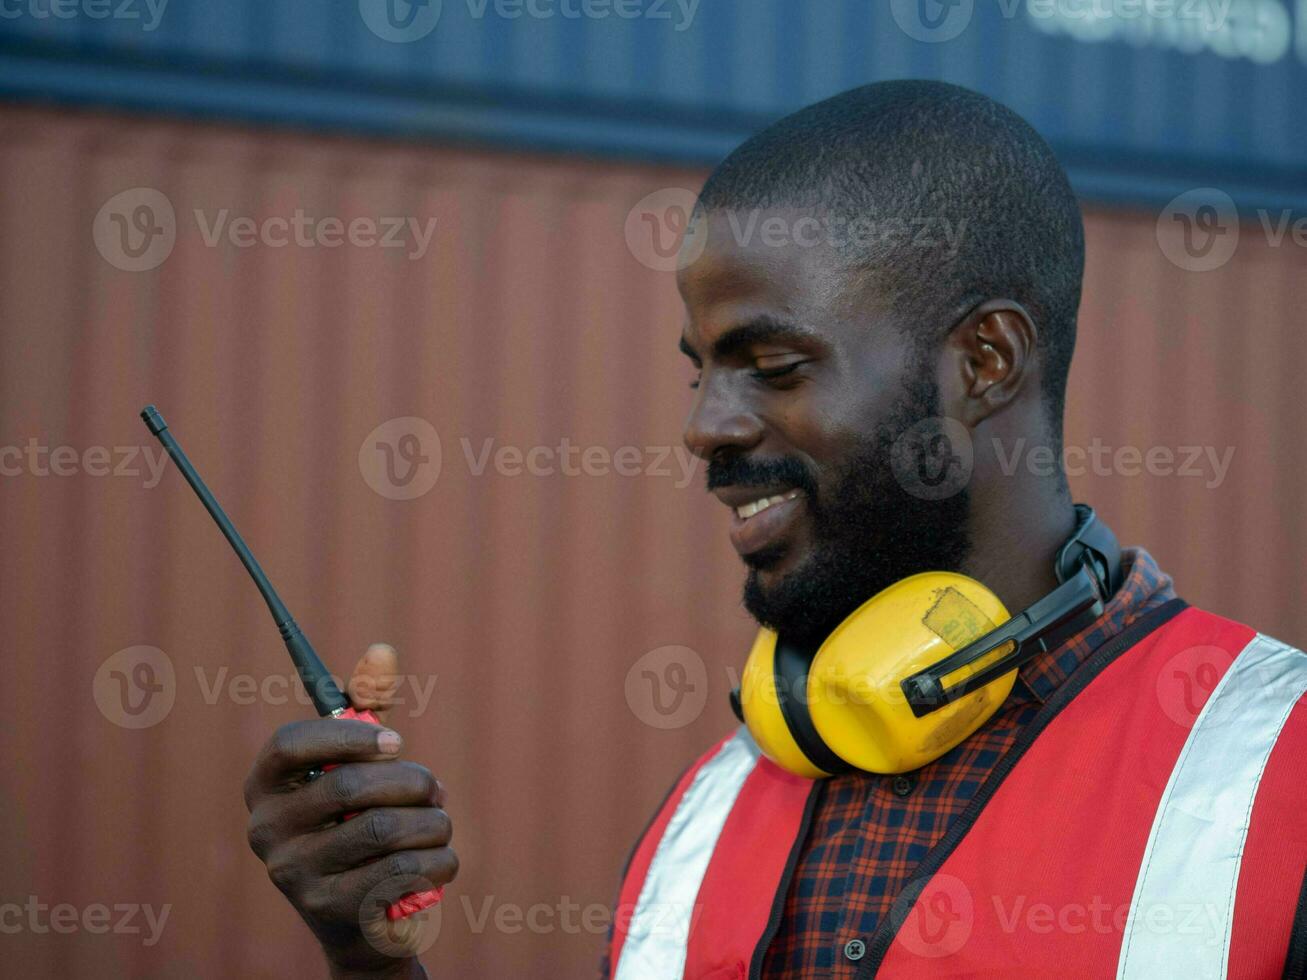 negro piel sur África americano persona personas humano labor empleado joven adulto etnia interior trabajo trabajo negocio película sonora walkie radio contento sonrisa dientes blanco color comunicación industria auricular foto